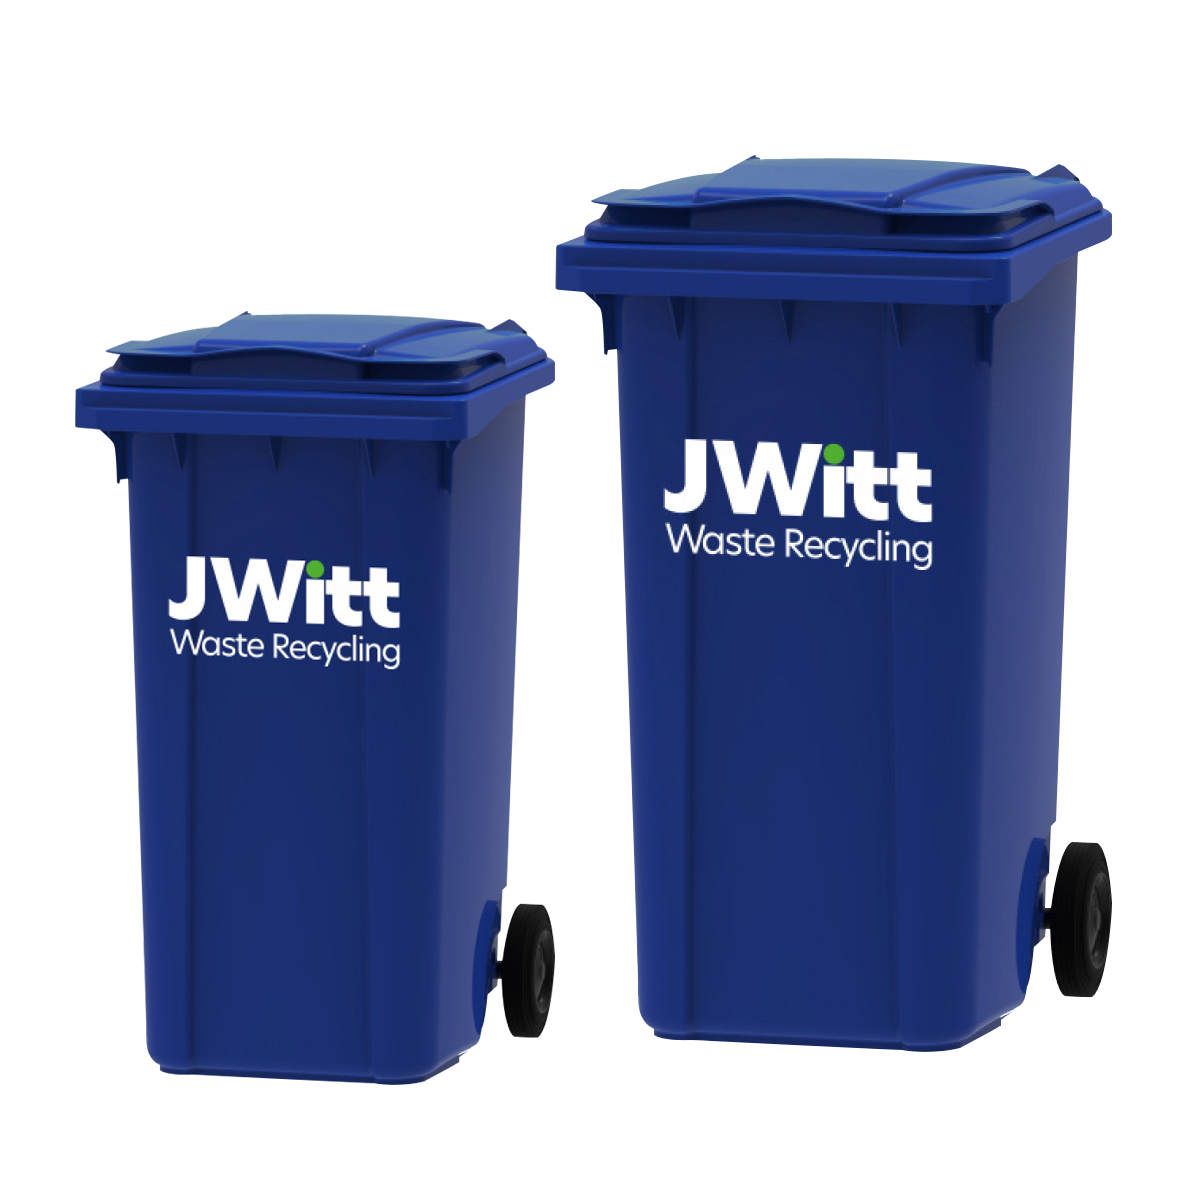 Wheelie bin hire and wheelie bin sizes | JWitt Waste Recycling